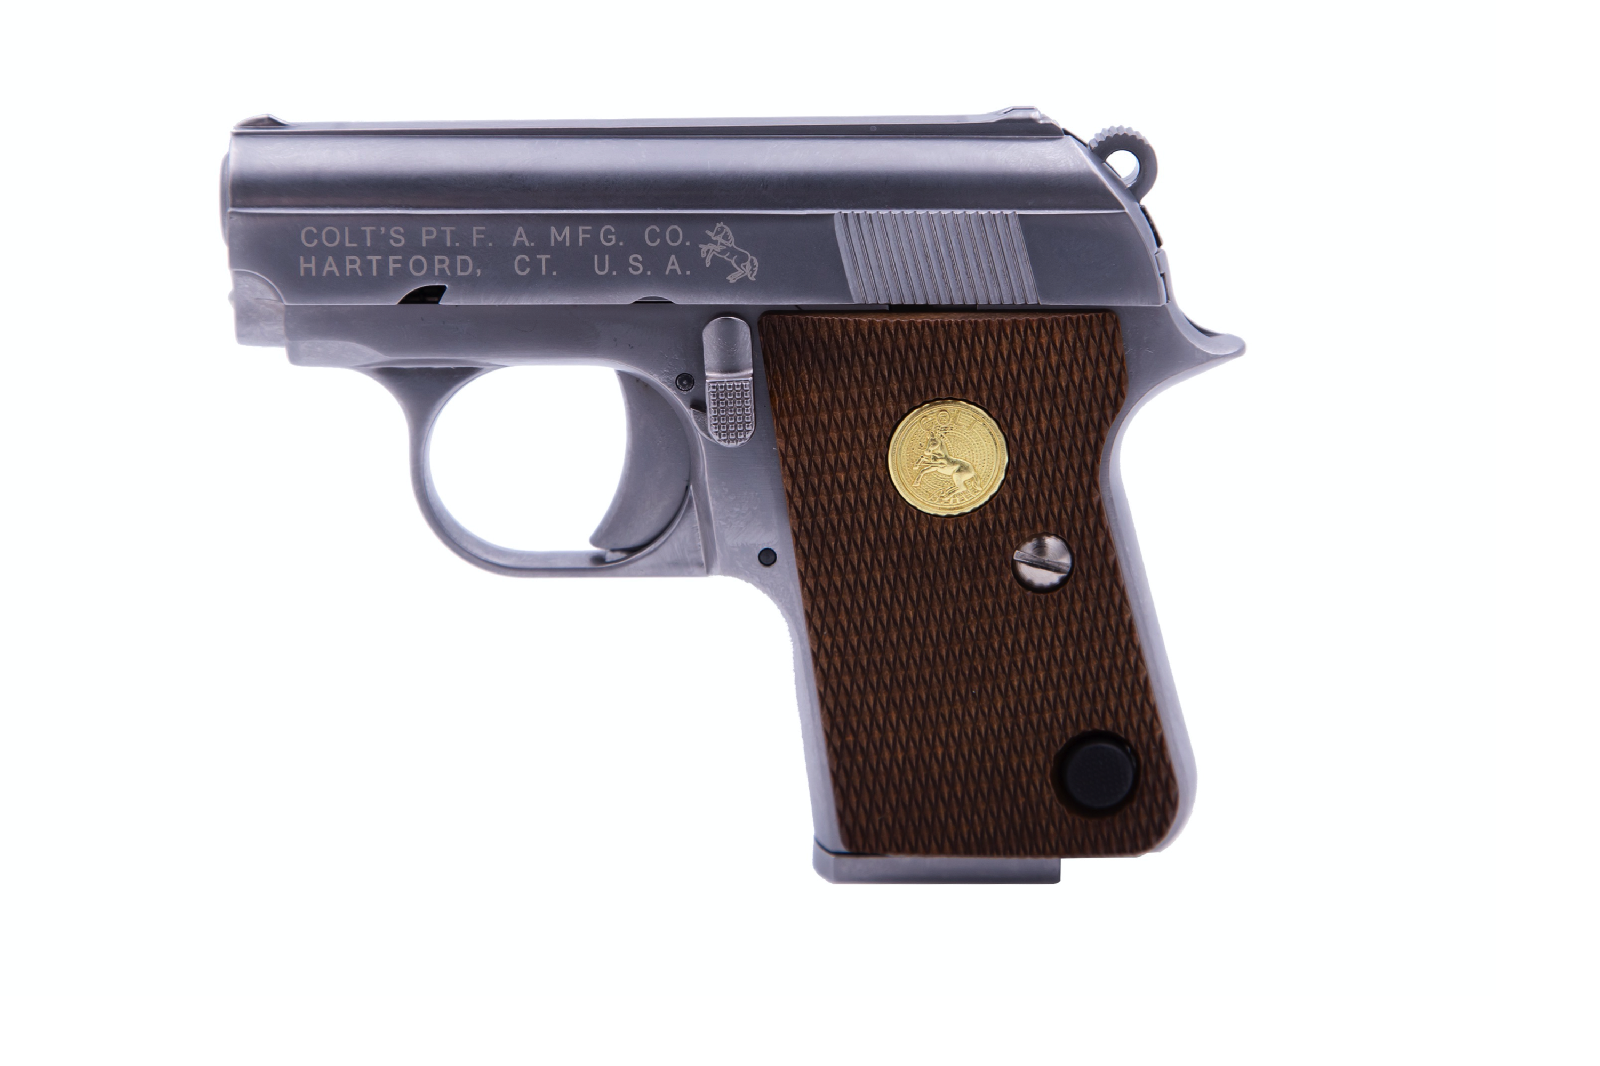 Pack pistolet à Billes COLT M1911 A1 Cybergun noir SPRING 0,6j cal